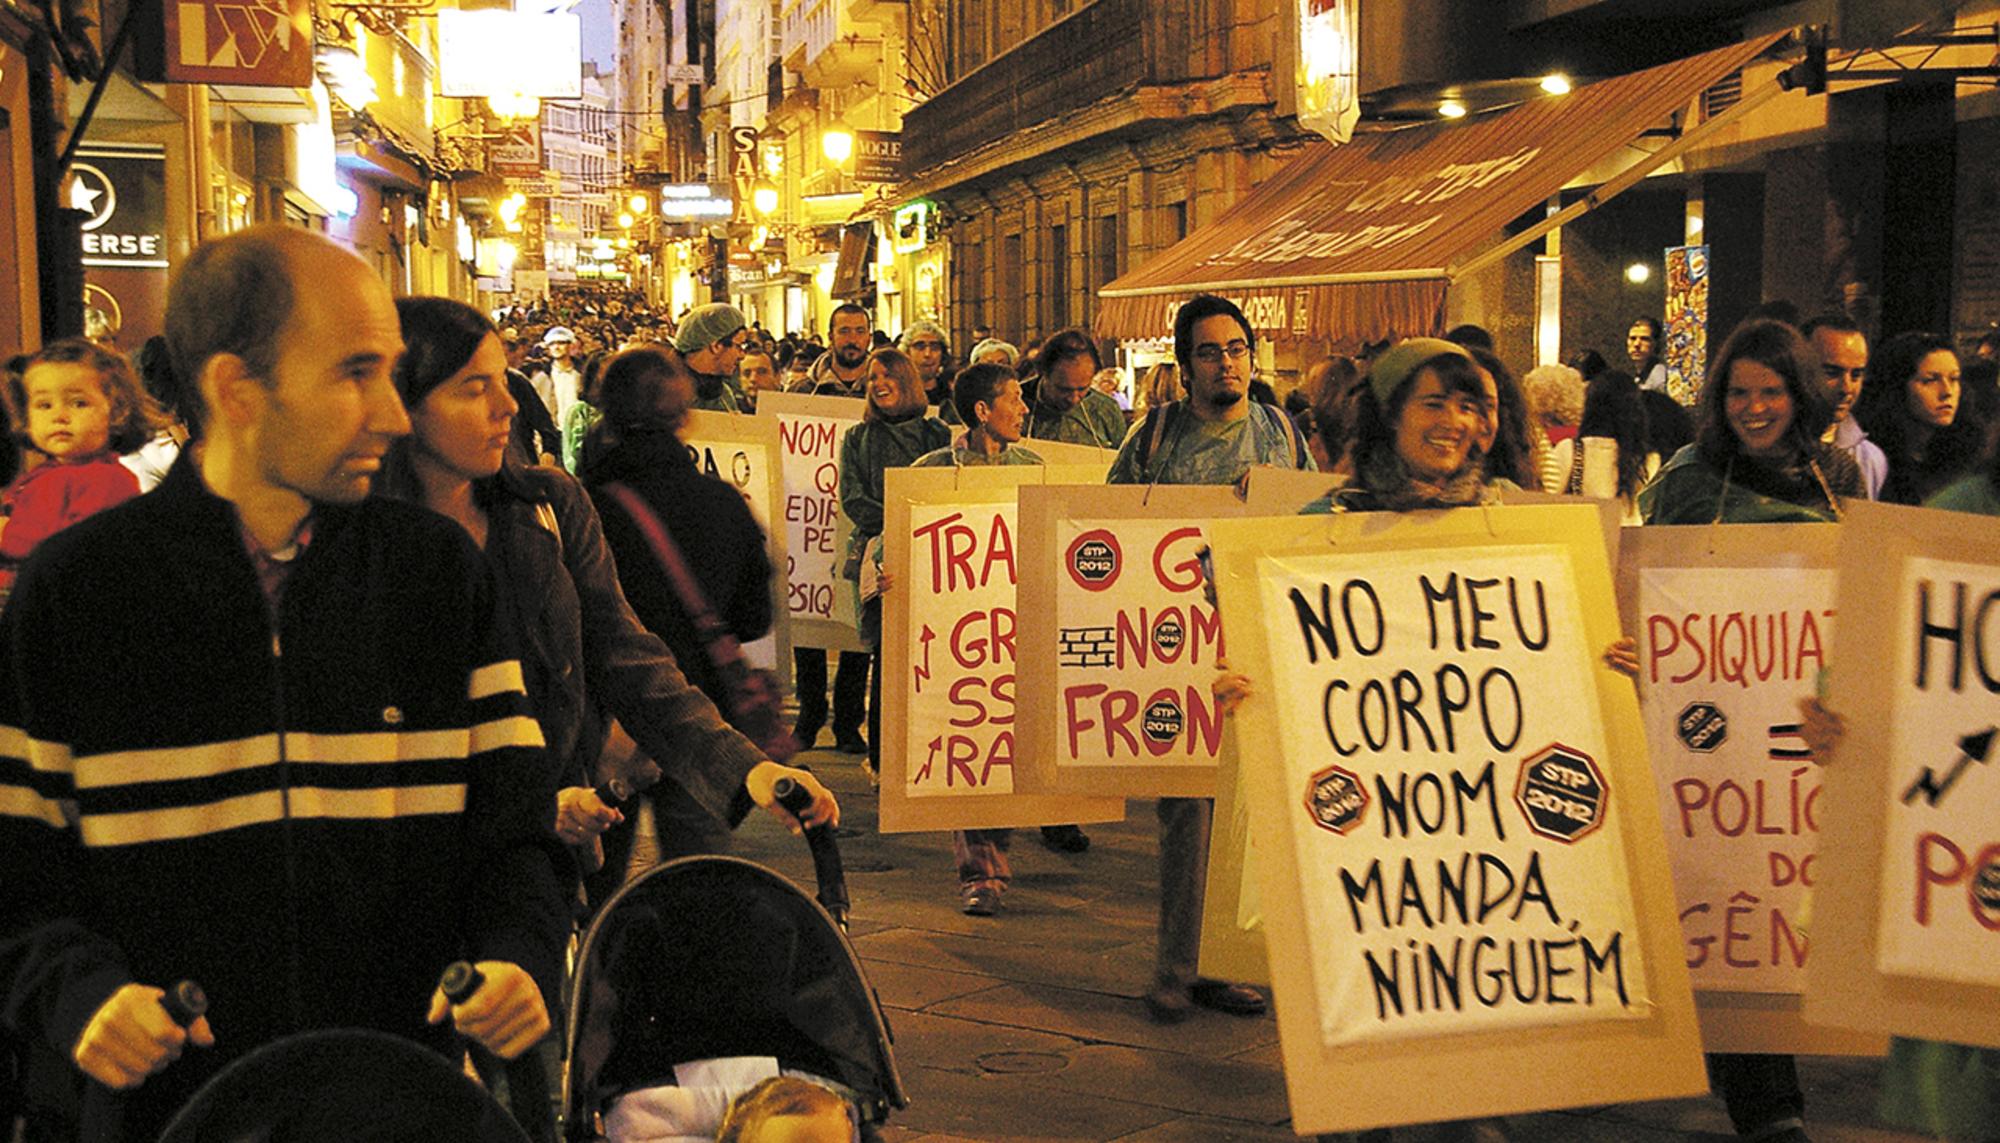 Movemento queer en Galiza. Maribolheras Precárias